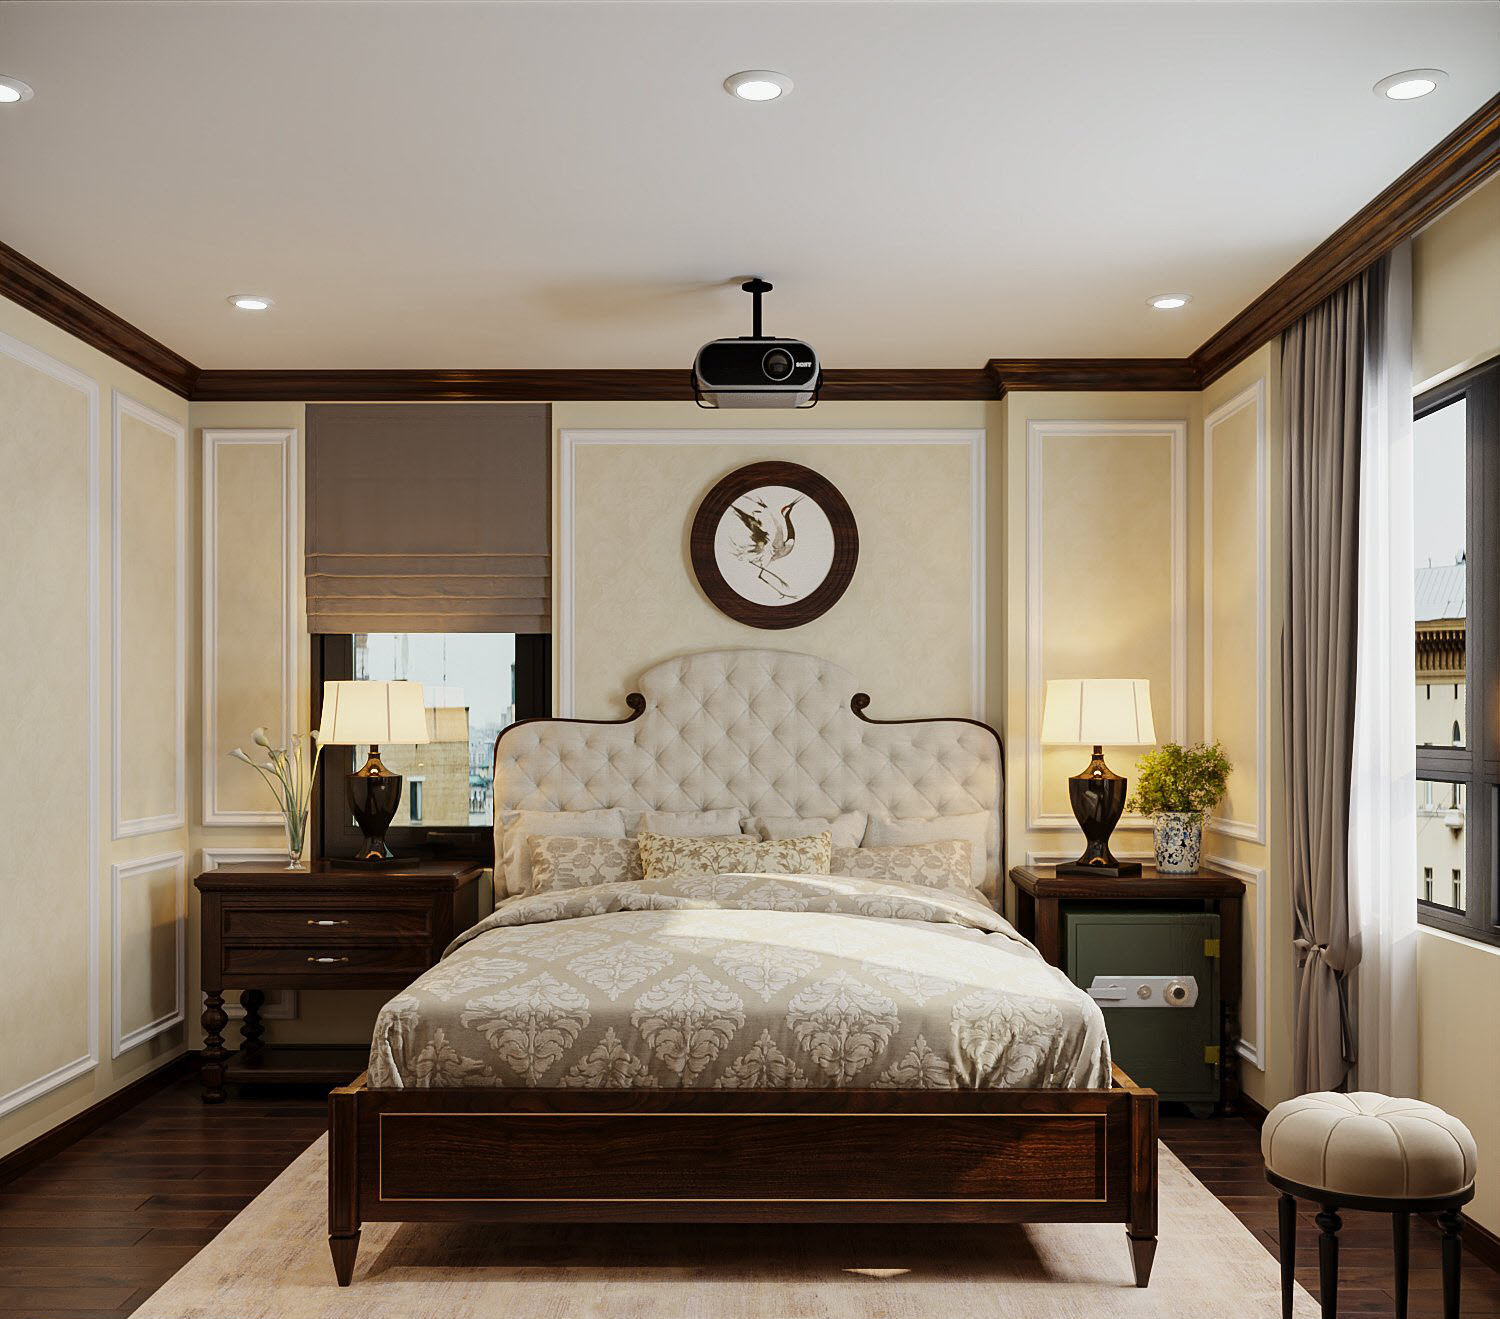 Phòng ngủ master có diện tích vừa phải, sử dụng nội thất sang trọng, bài trí đối xứng nhẹ nhàng. Các ô cửa sổ kính giúp căn phòng luôn thoáng đãng và nhận đủ ánh sáng tự nhiên.